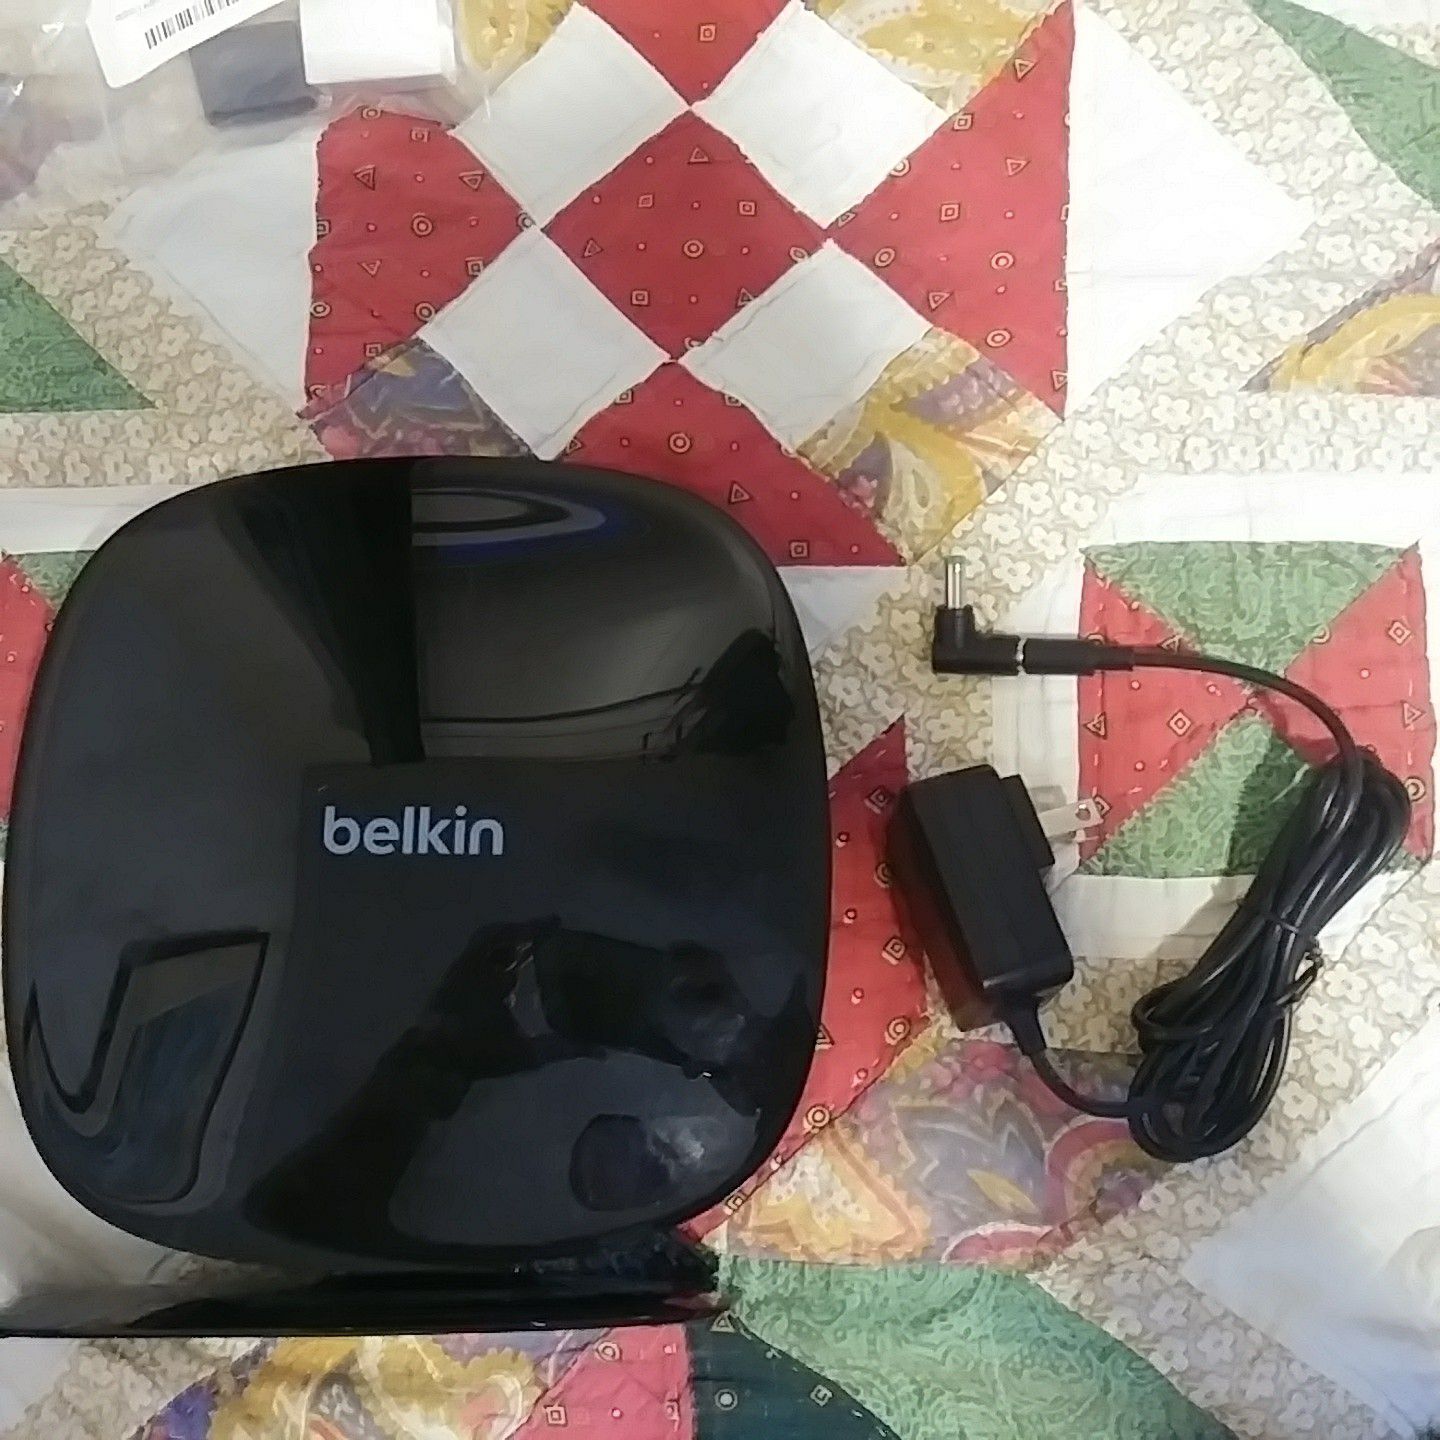 Belkin AC 1200 Router